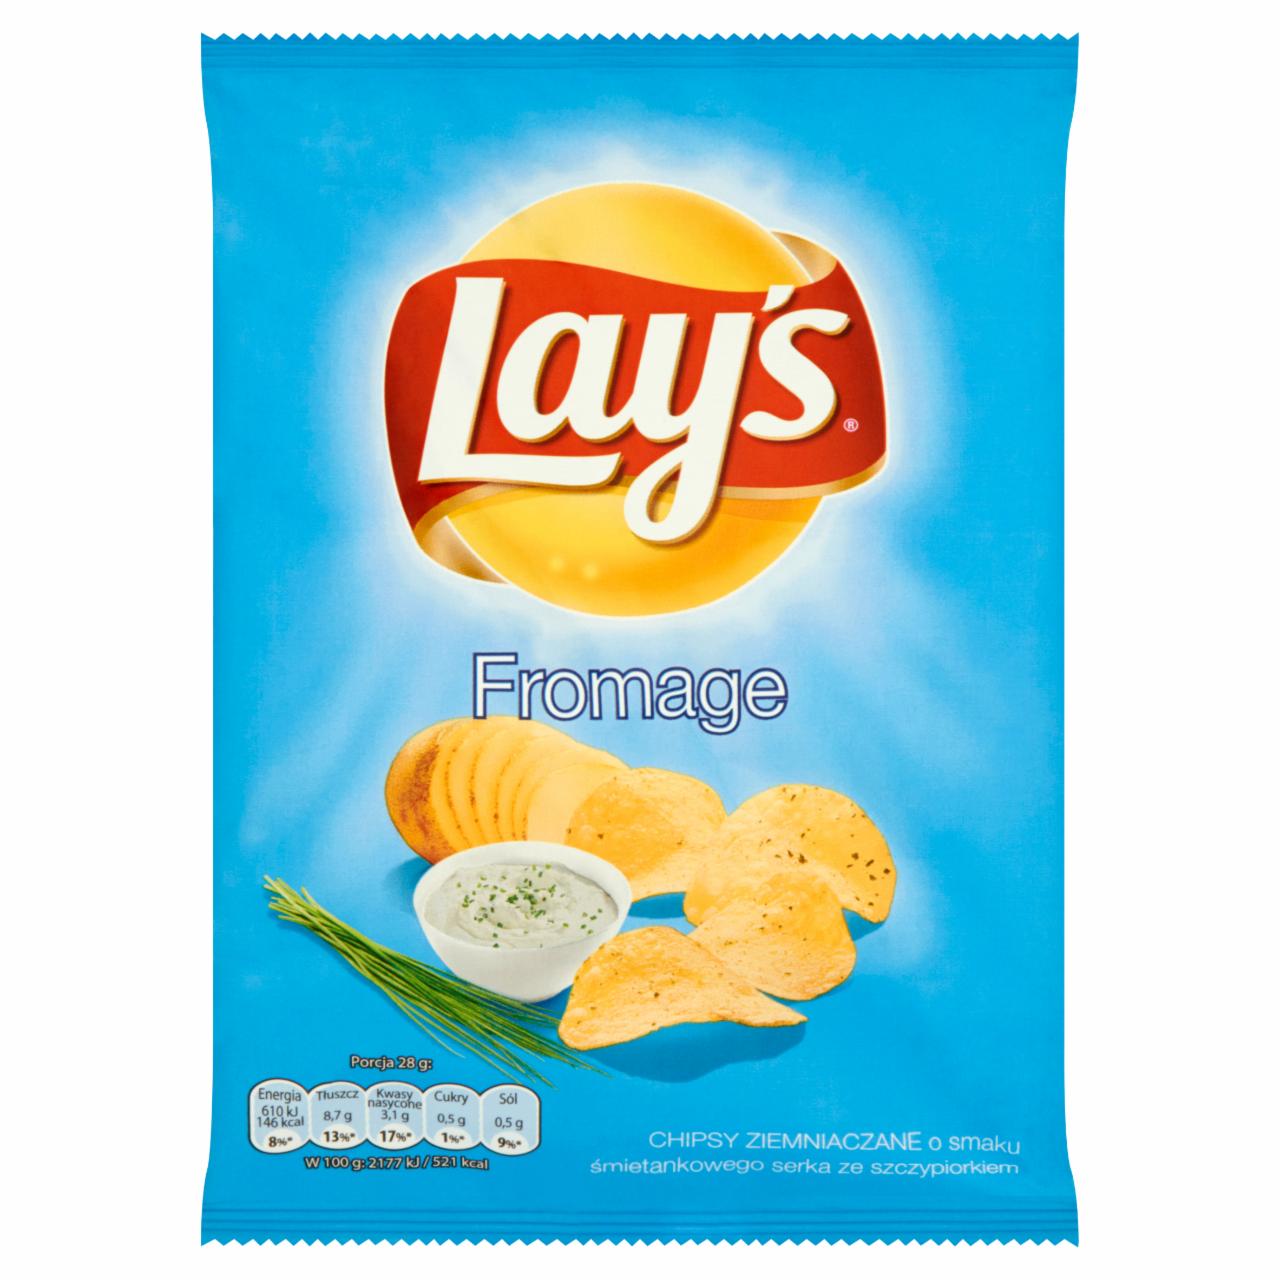 Zdjęcia - Lay's Fromage Chipsy ziemniaczane 28 g